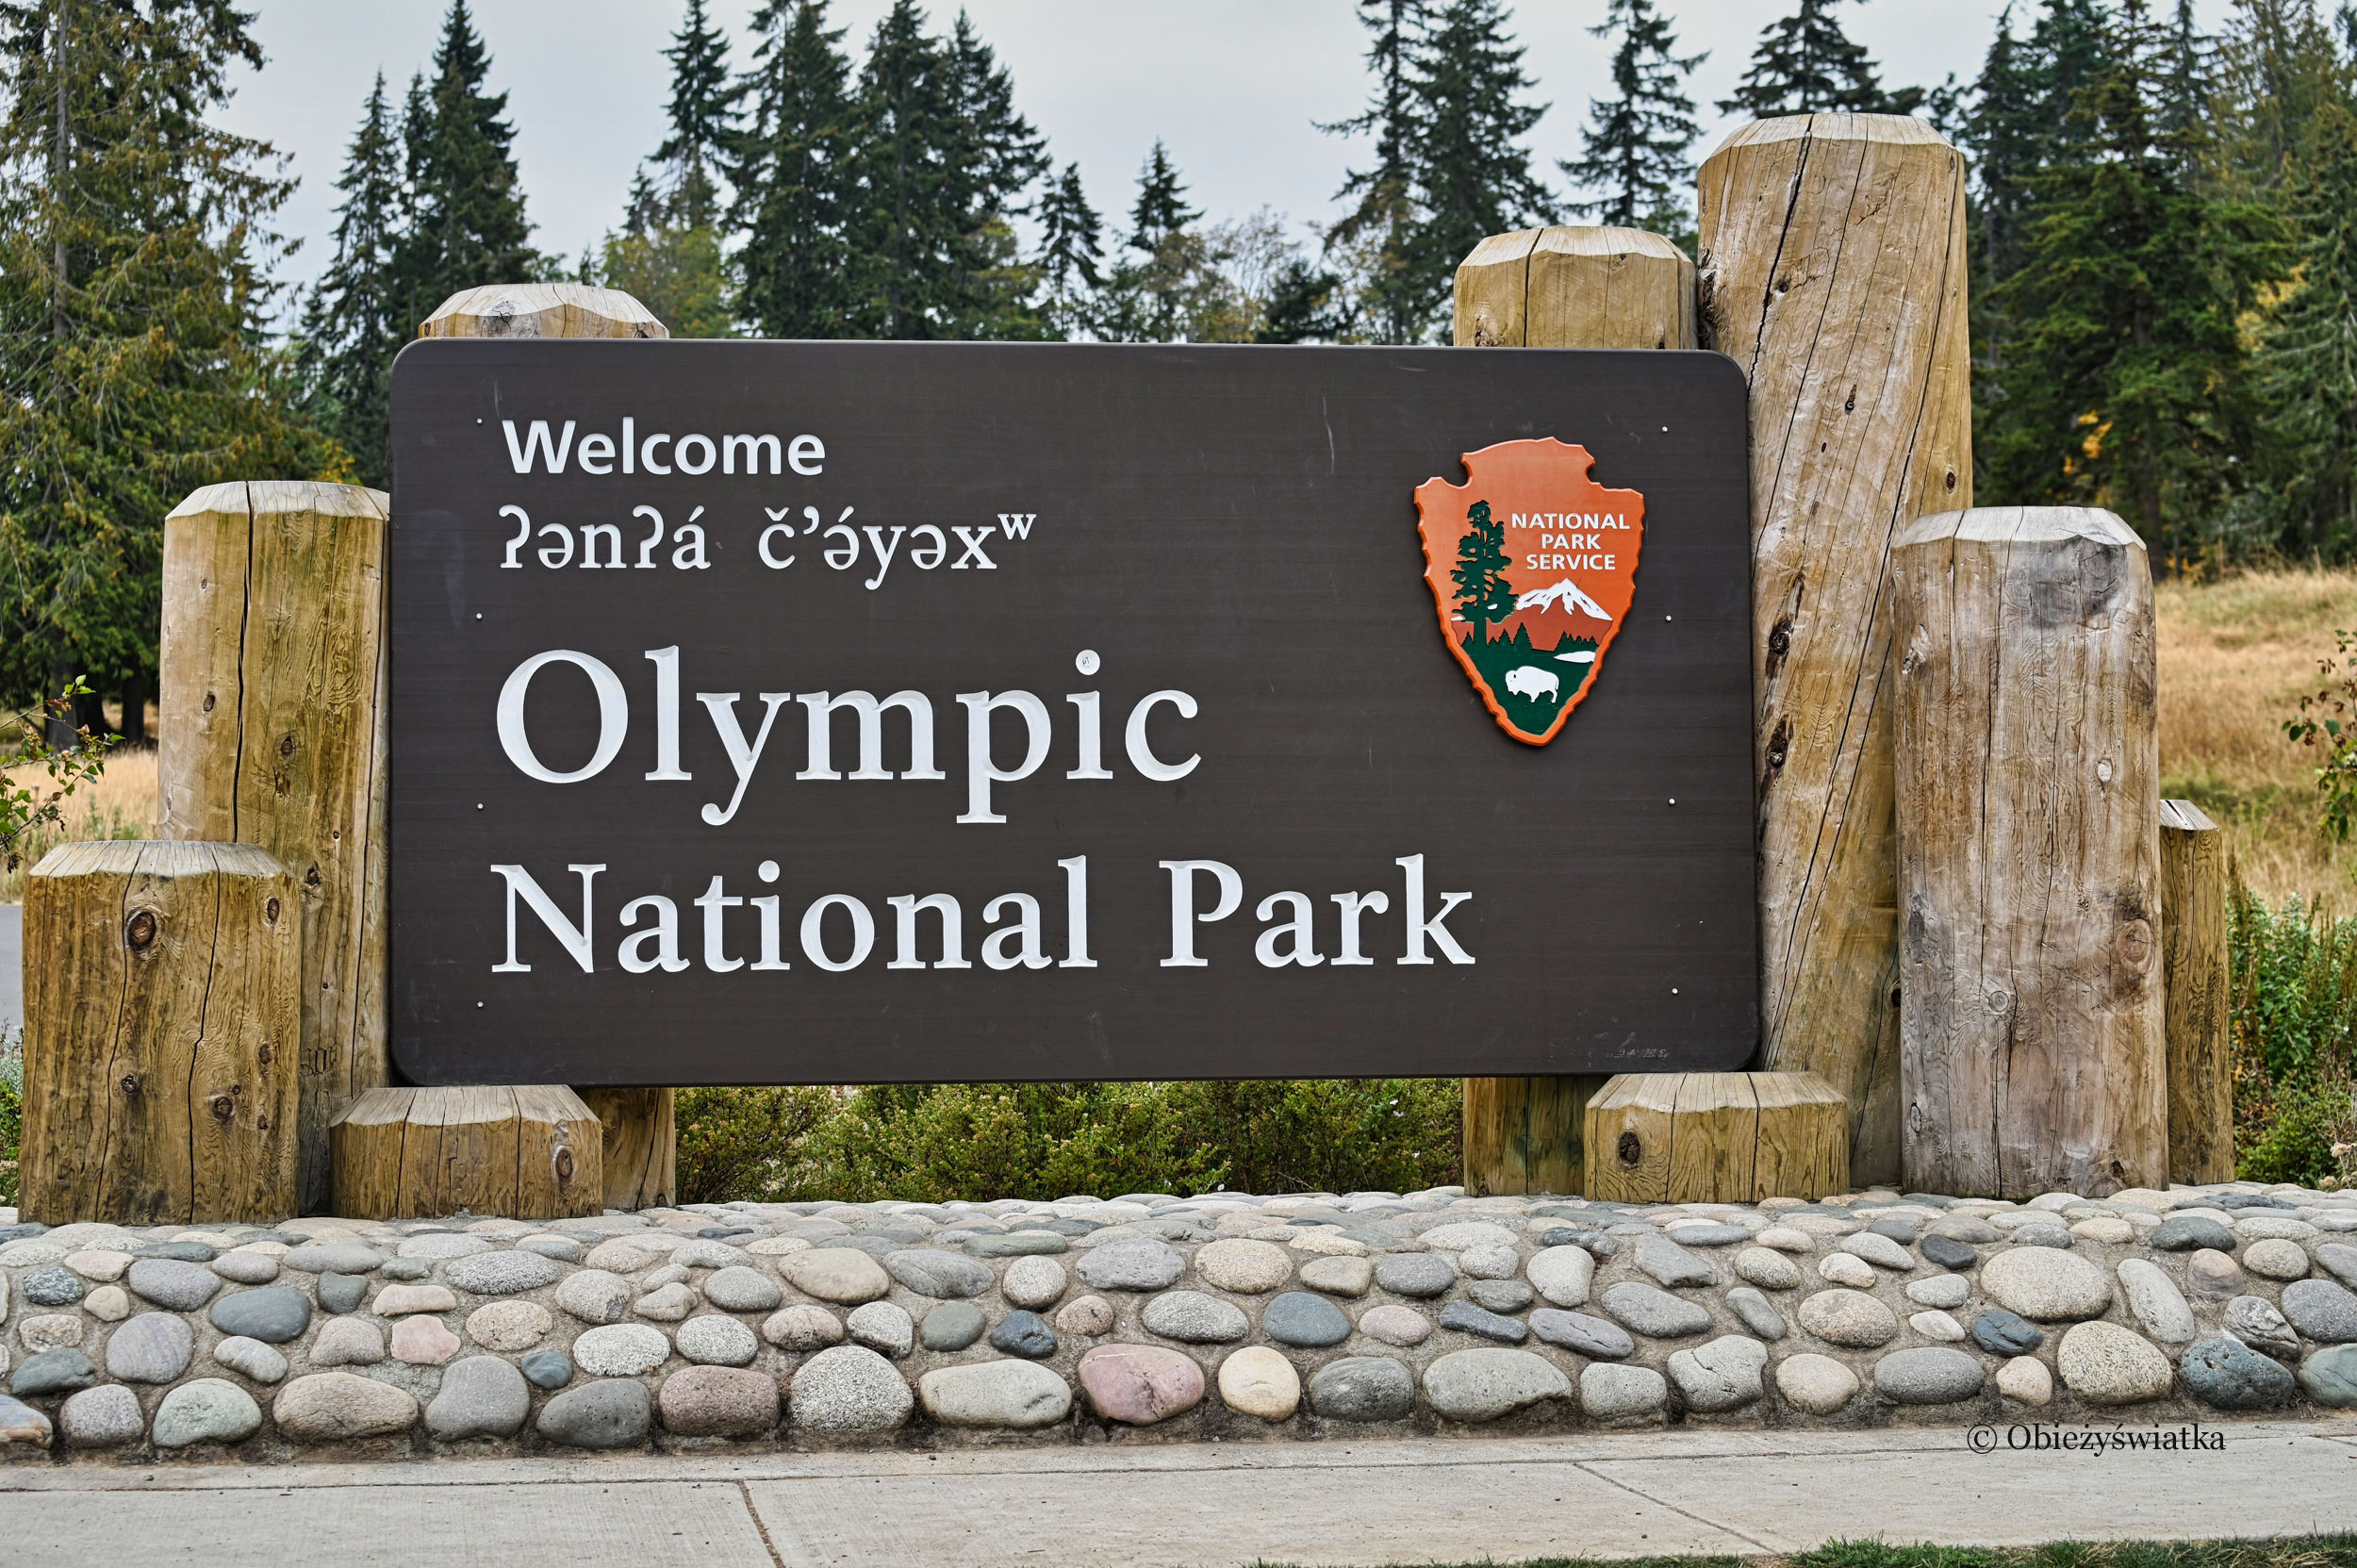 Dwujęzyczny (angielski i w języku klallam) szyld przy wjeździe do Olympic National Park